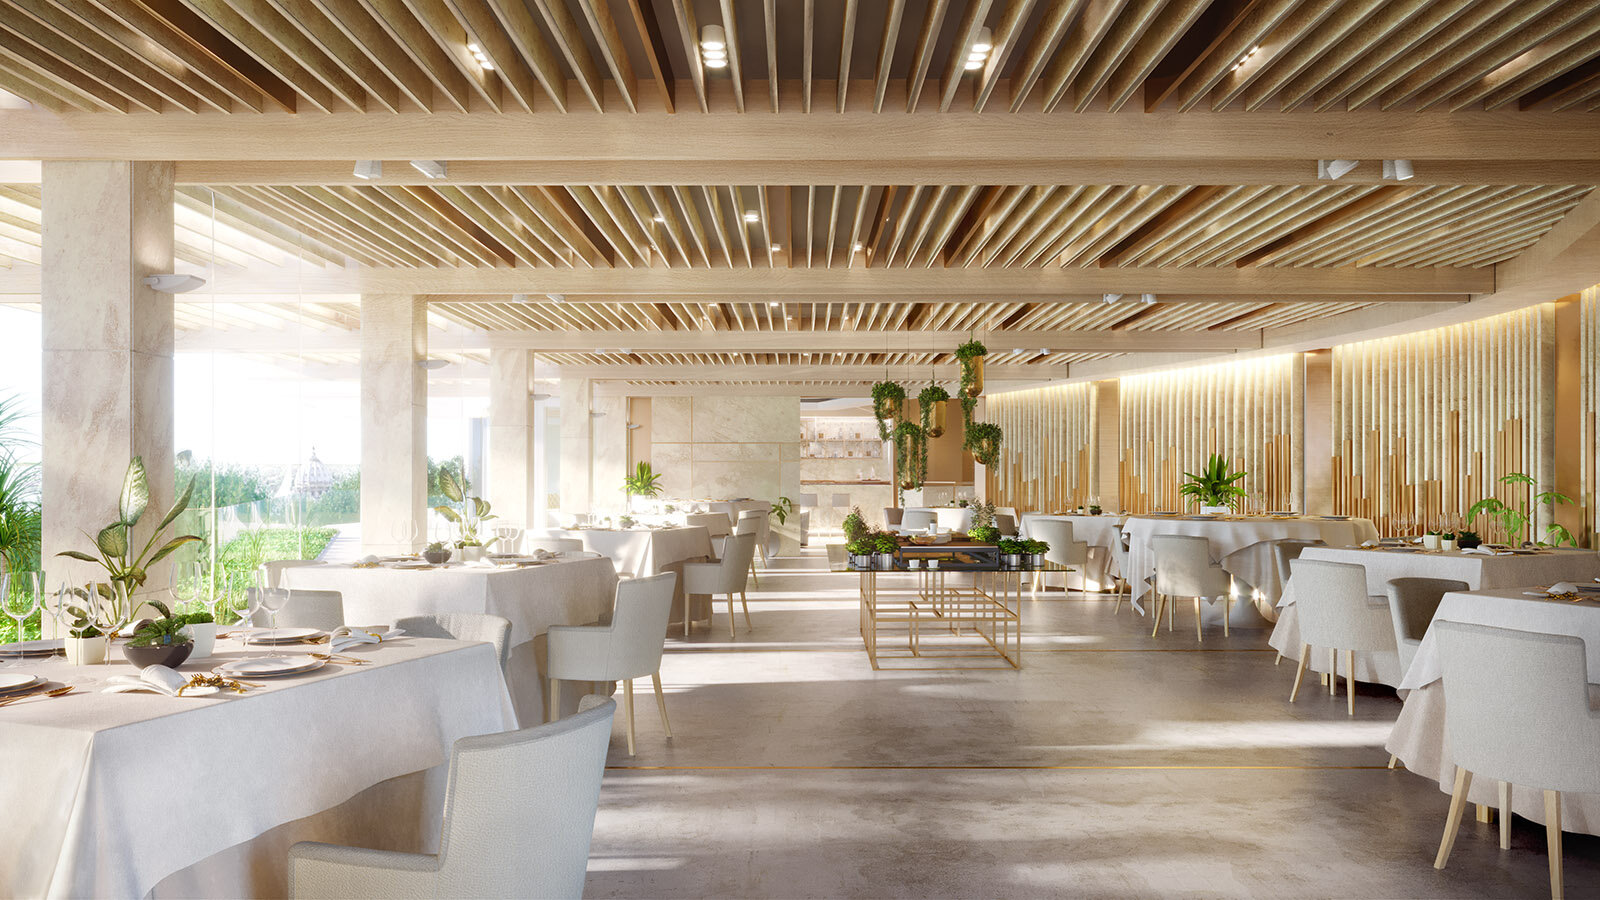   T.A.RI-Architects , La Pergola, 3 Star Michelin restaurant in Rome 